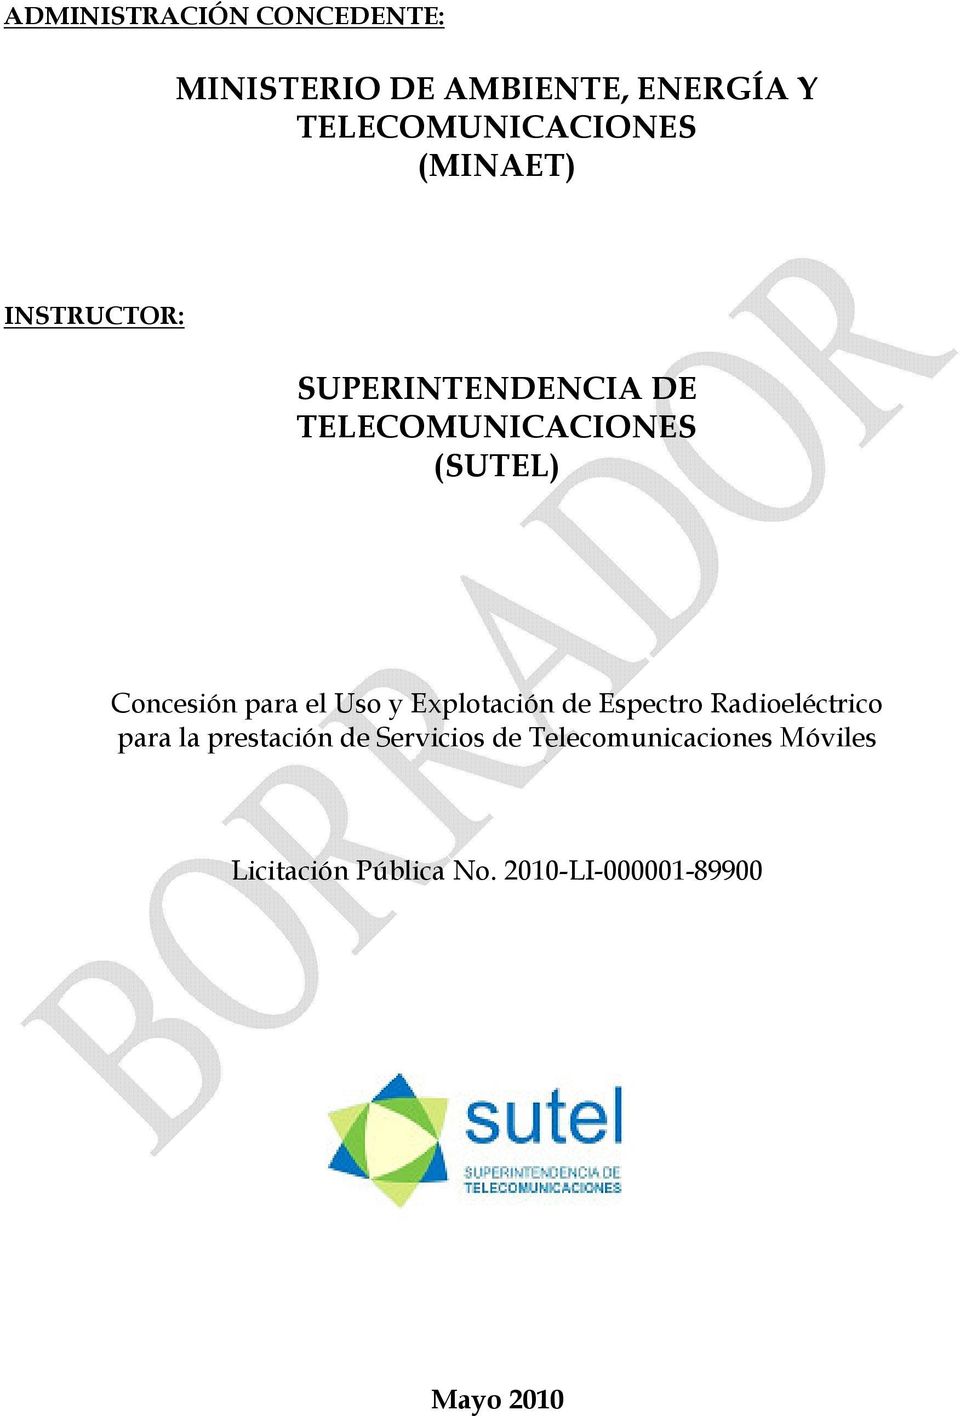 SUPERINTENDENCIA DE TELECOMUNICACIONES (SUTEL)